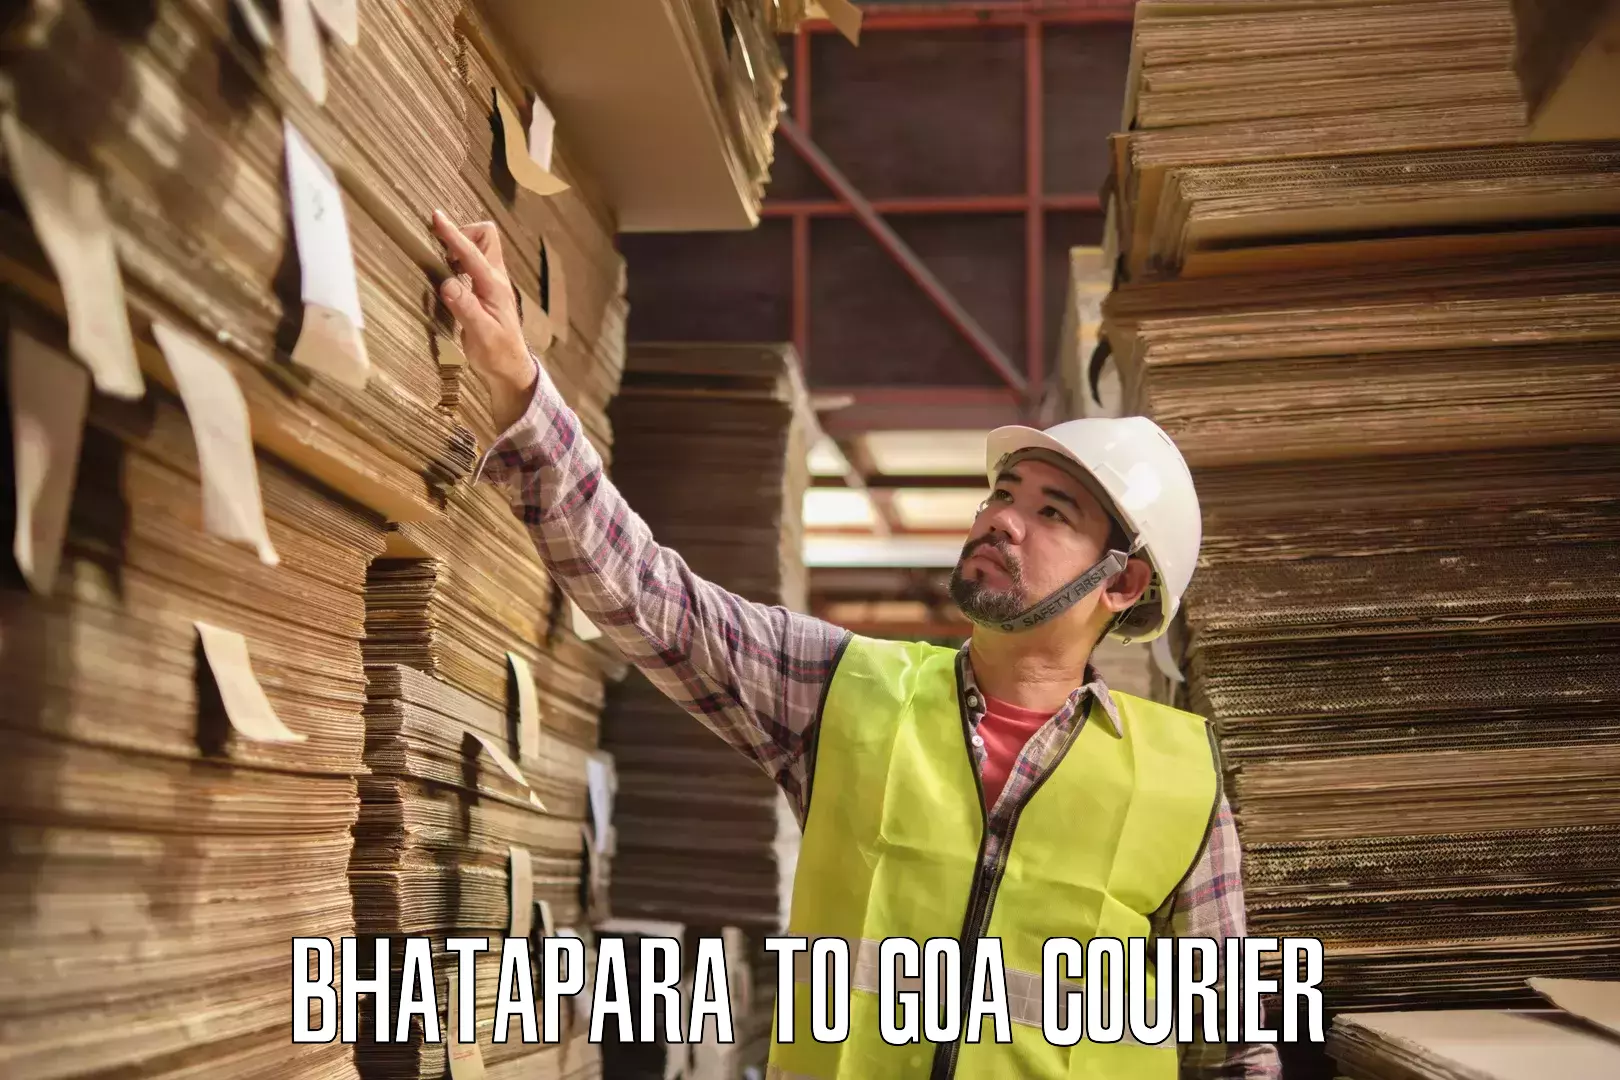 Multi-city courier Bhatapara to Bicholim